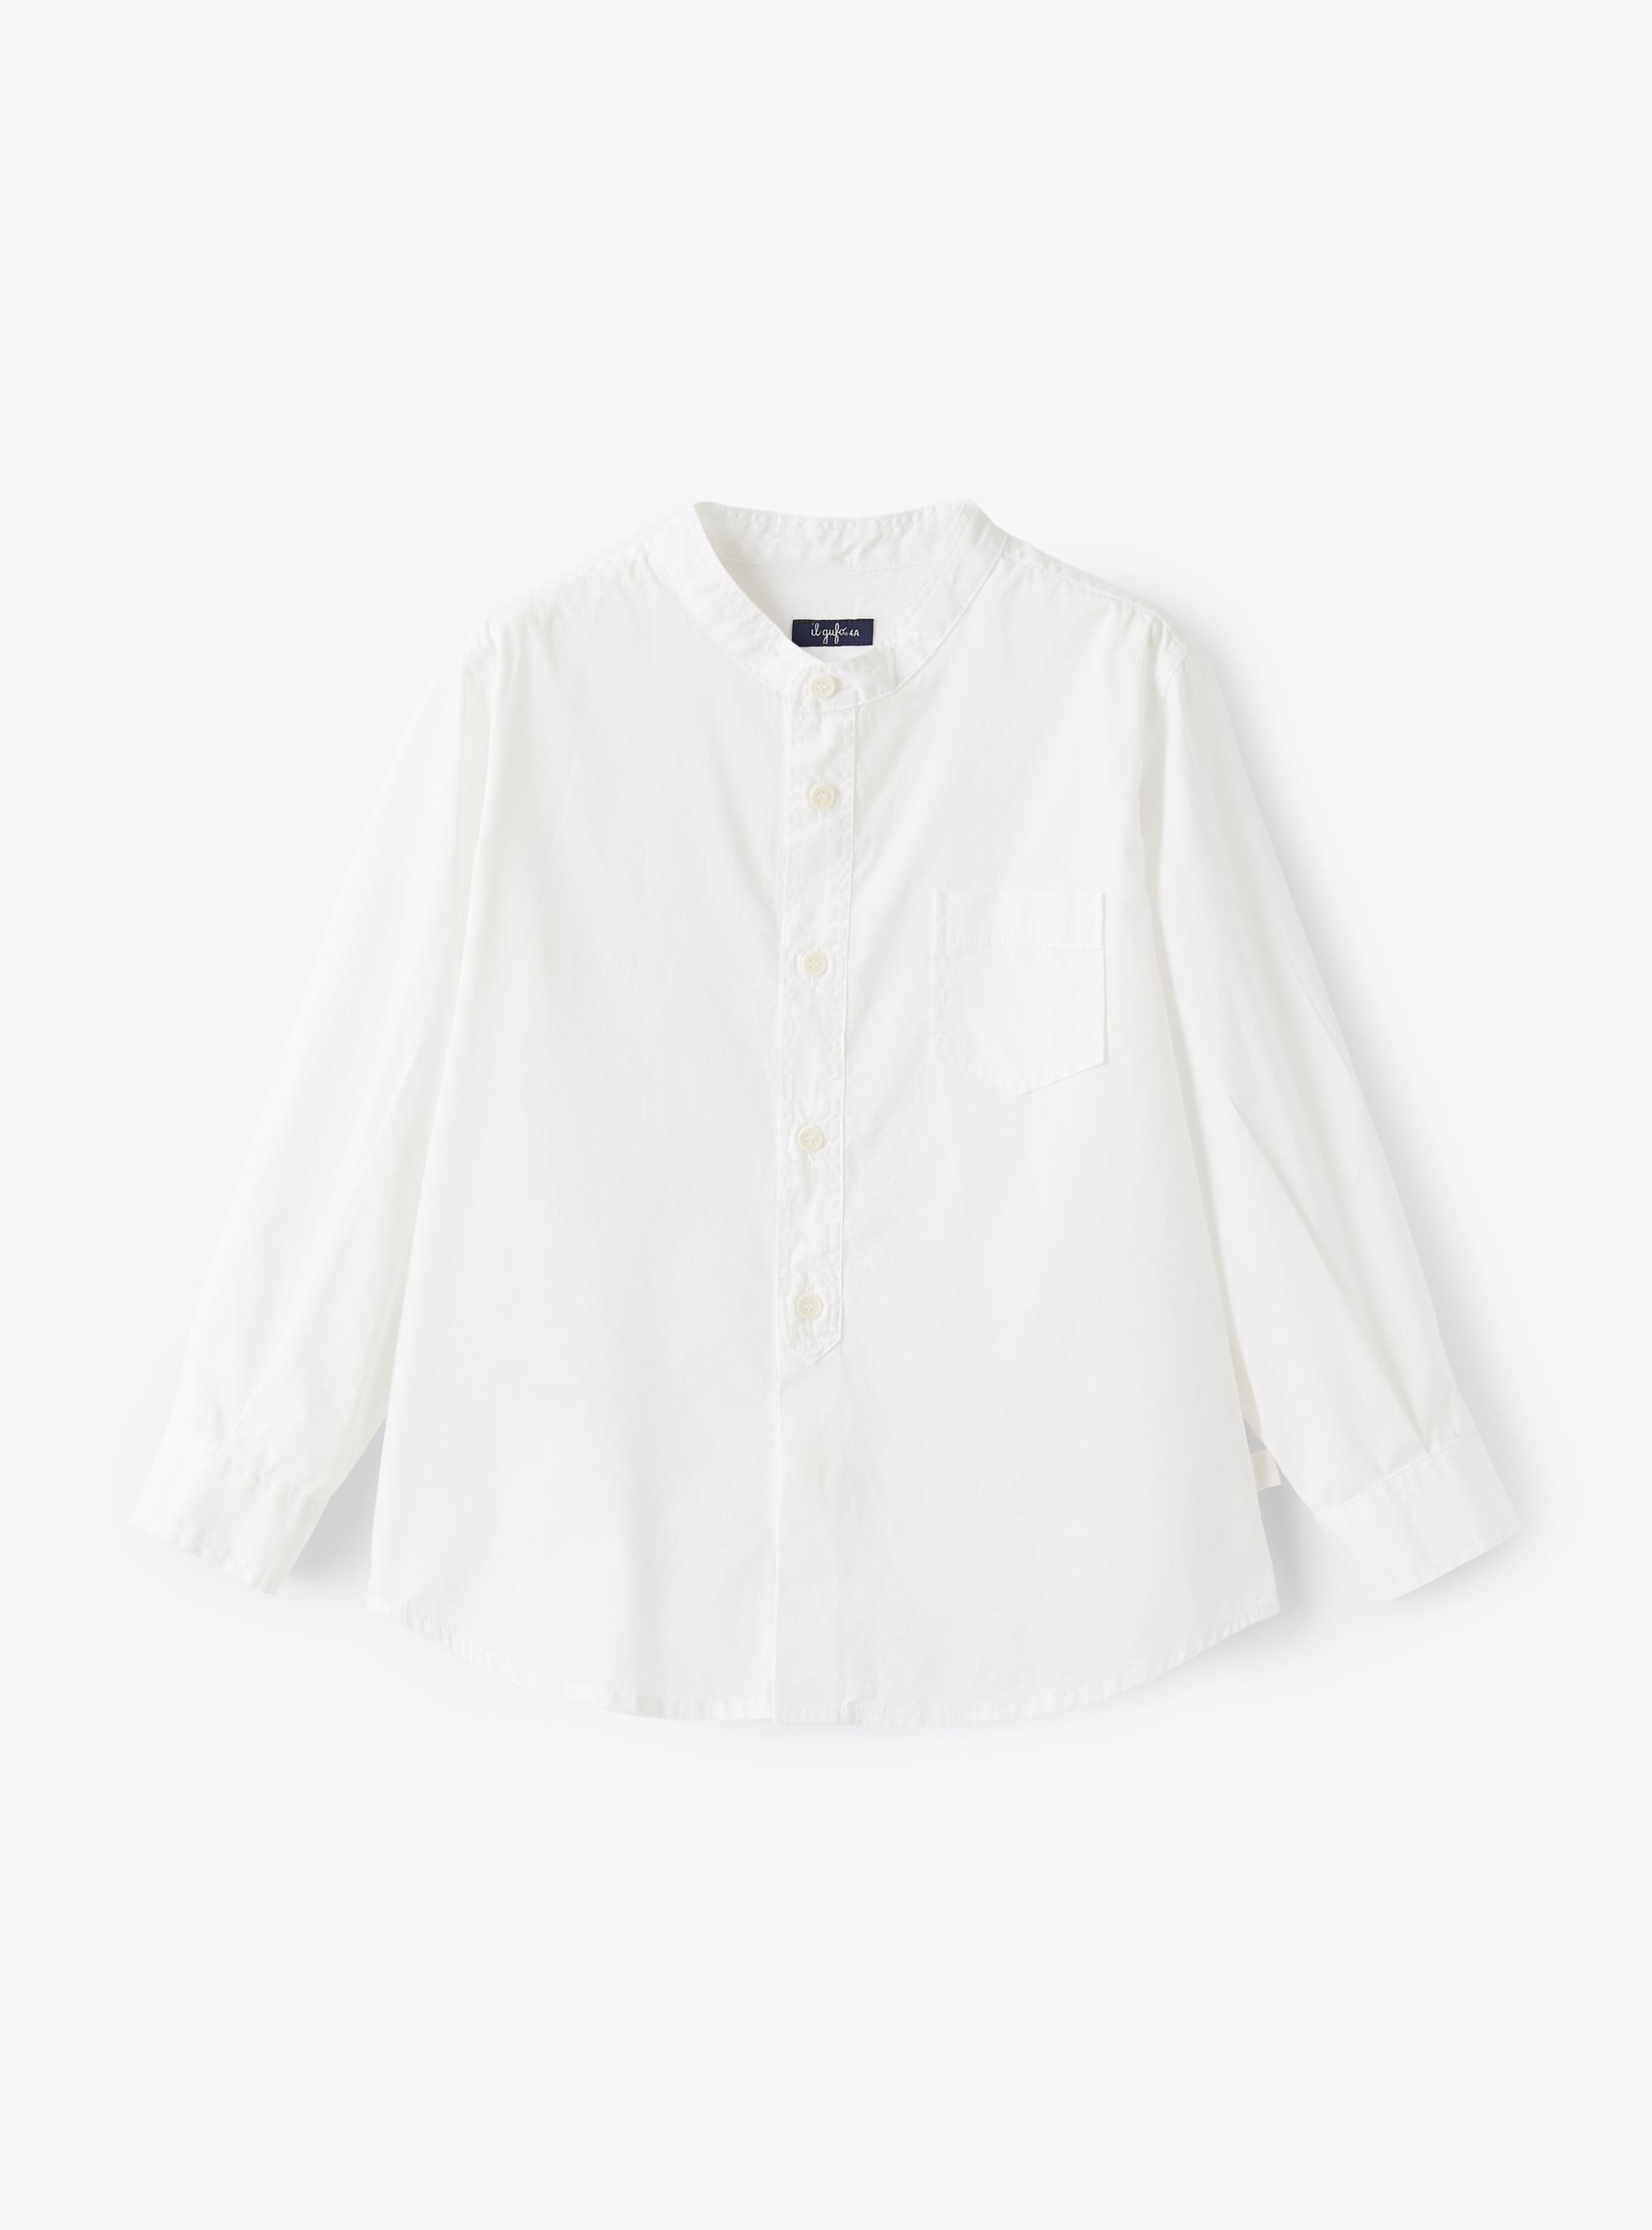 Koreanisches Hemd aus weißem Popeline - Hemden - Il Gufo